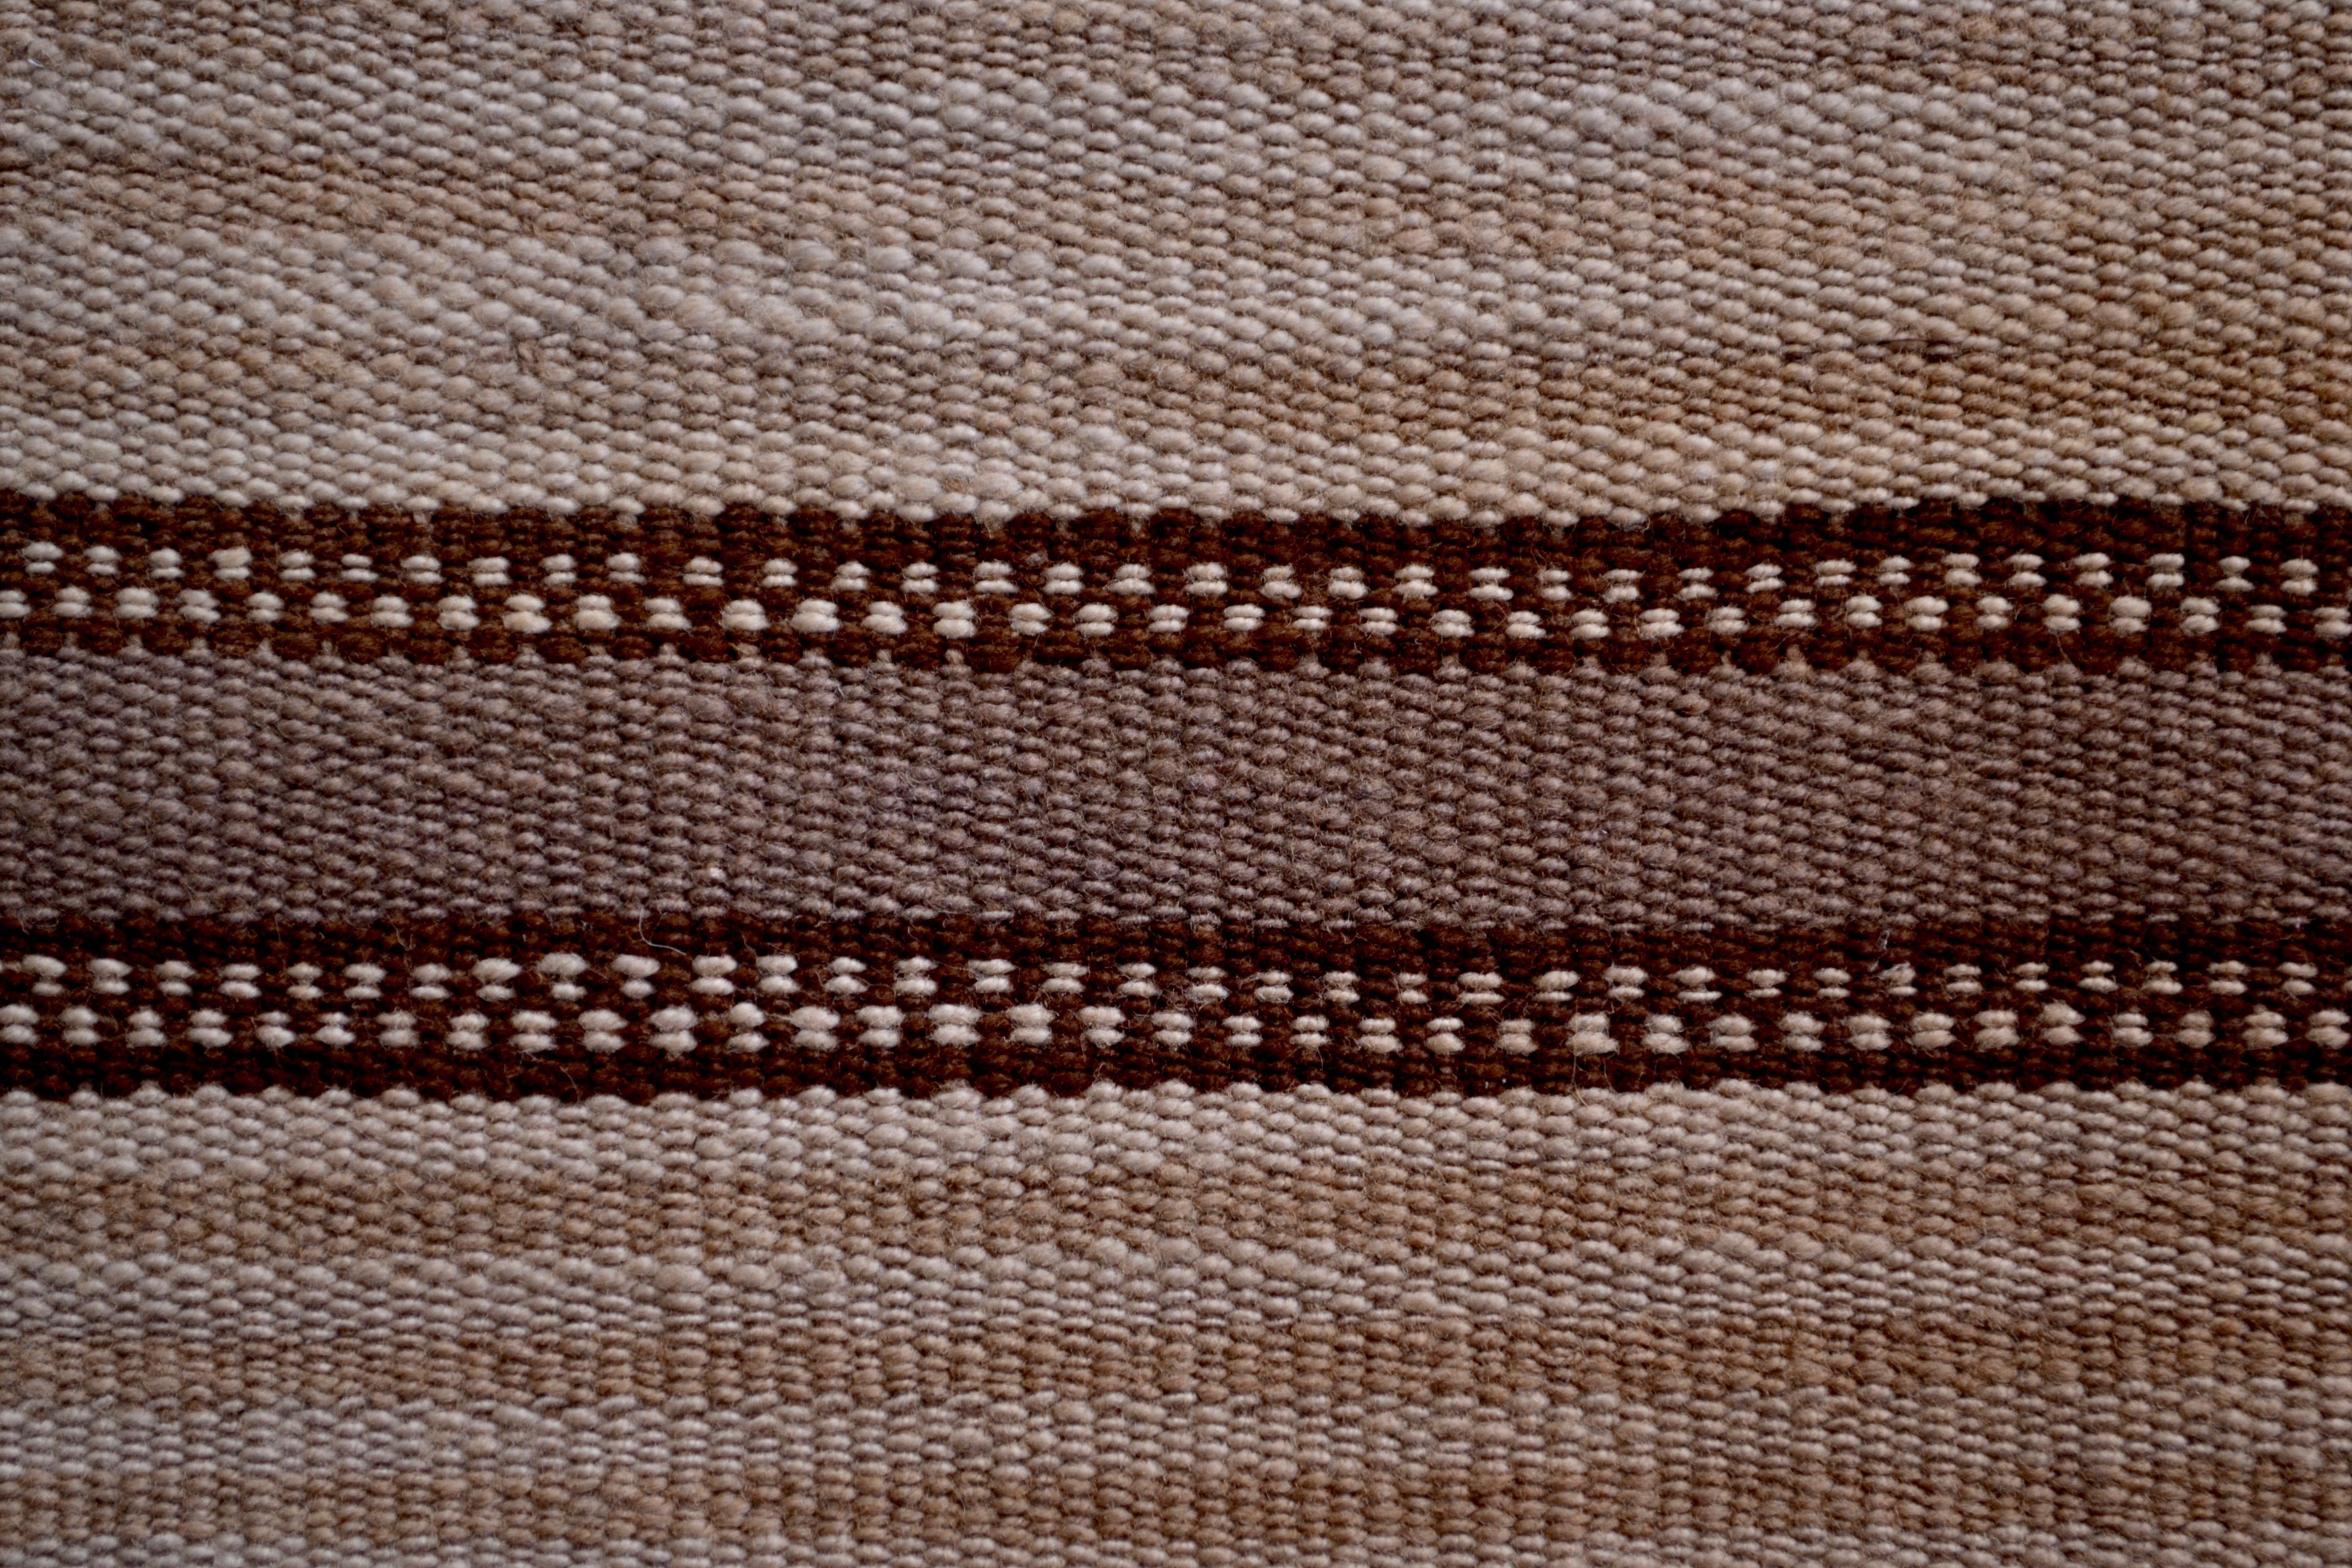 Hand-Woven Striped Inca Pre-Columbian Textile, Peru, circa 1400-1532 AD, Ex Ferdinand Anton For Sale